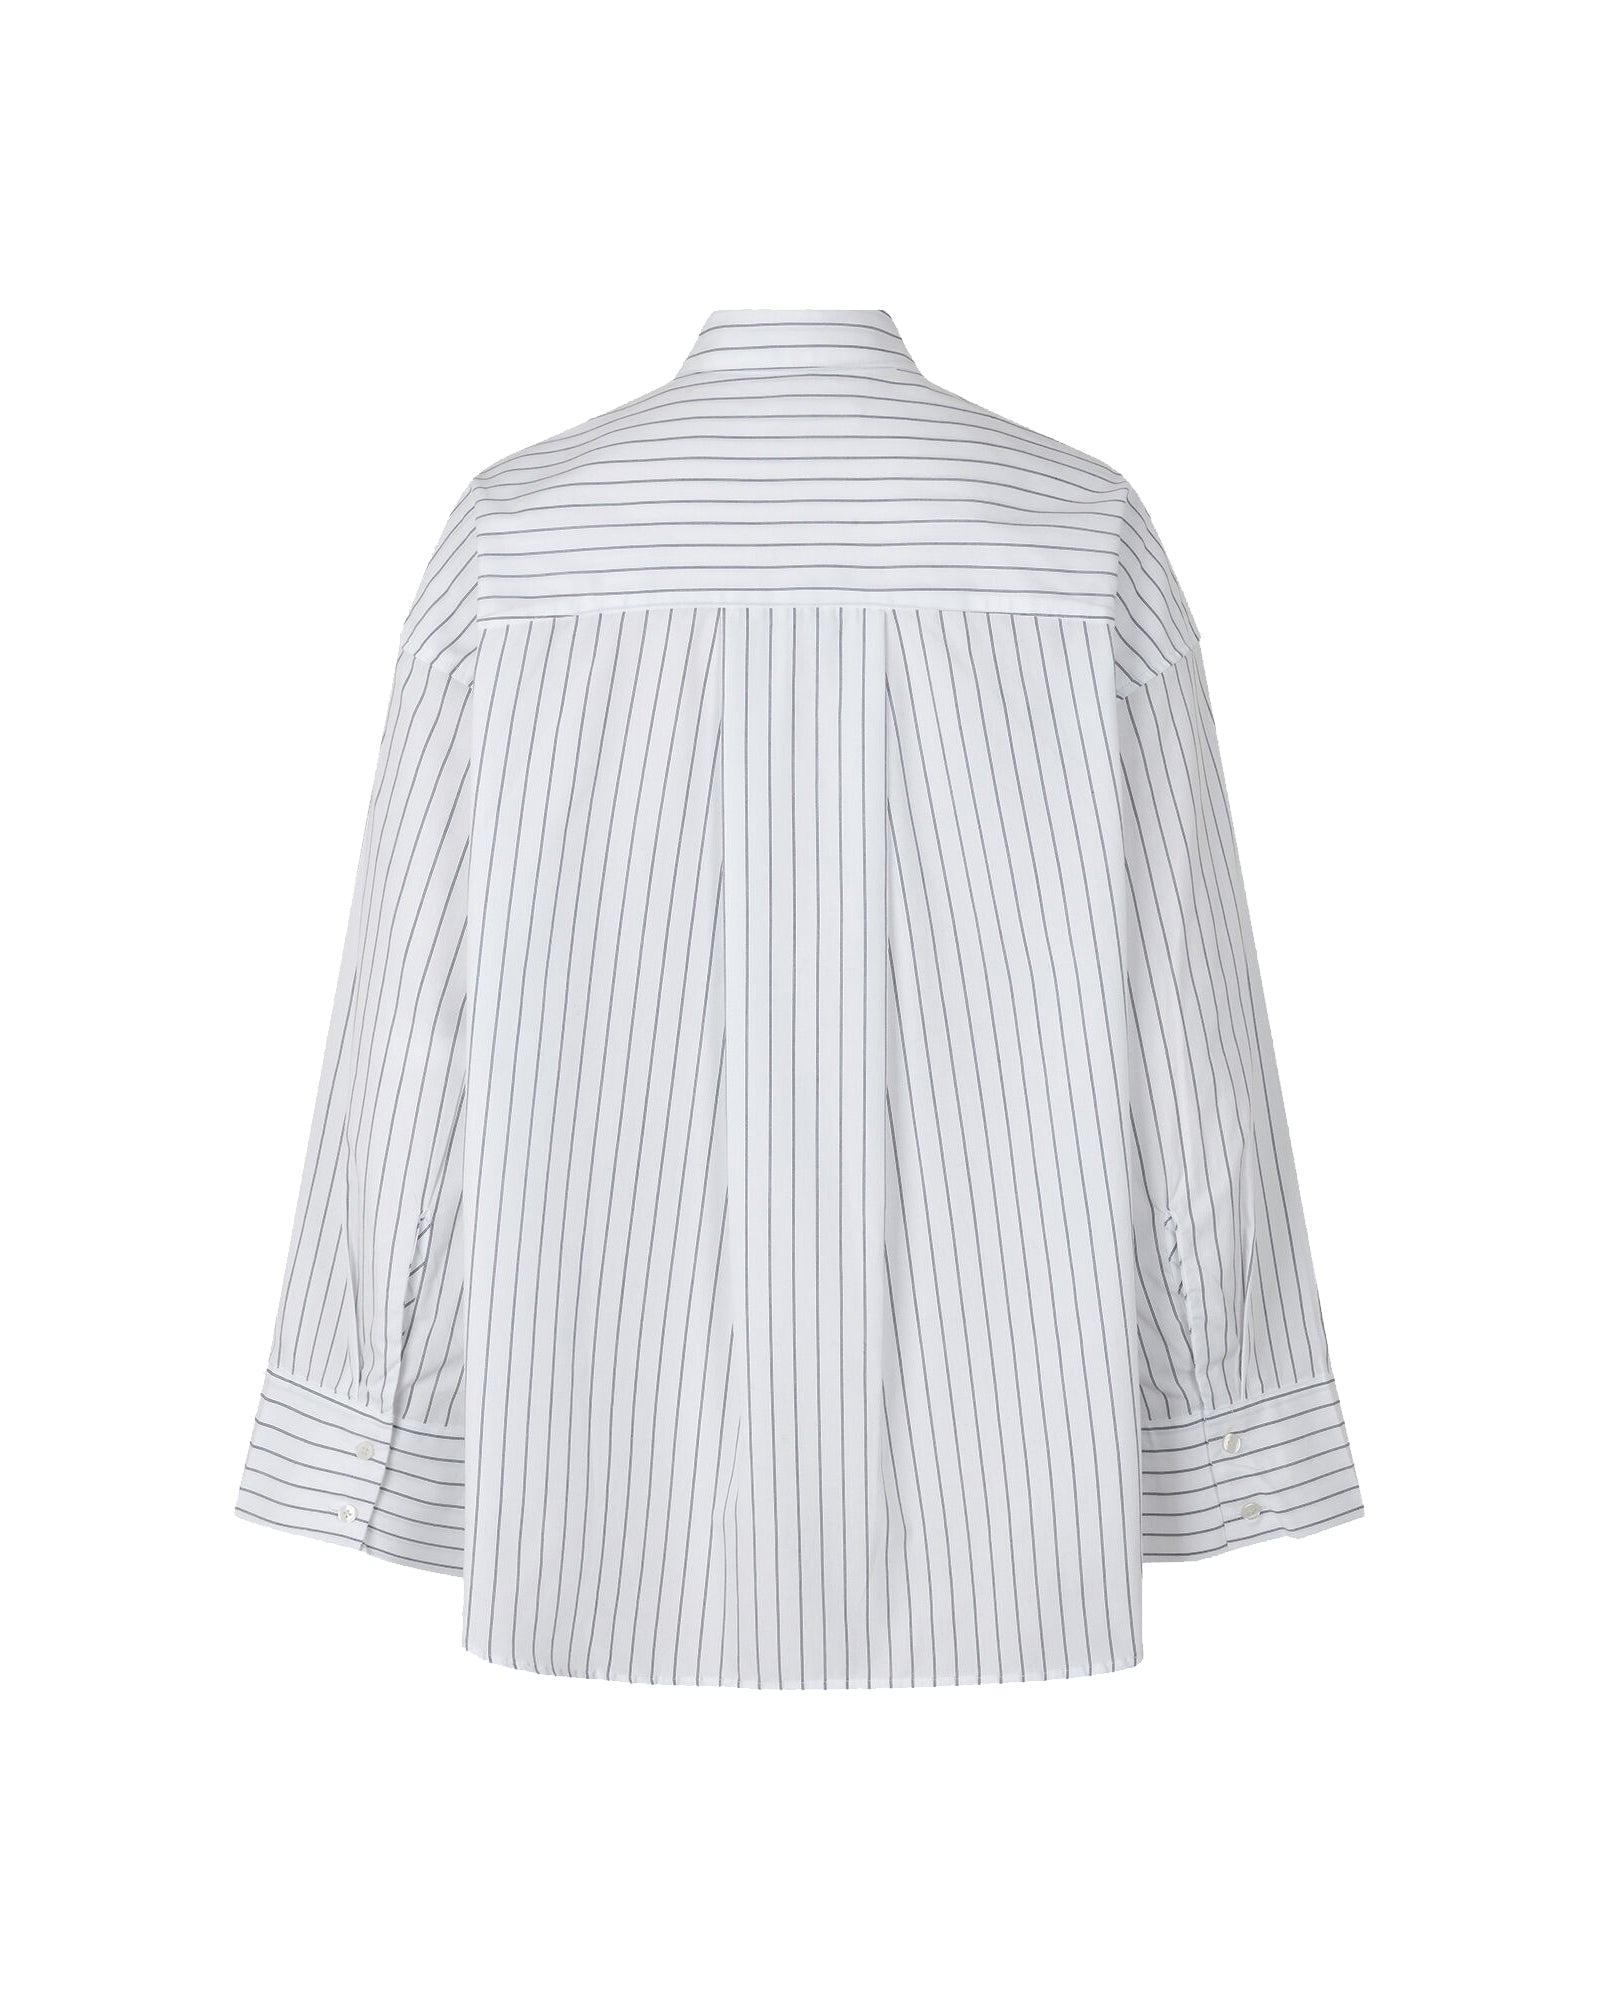 Camisa Marika shirt 13072 - Bright white st.